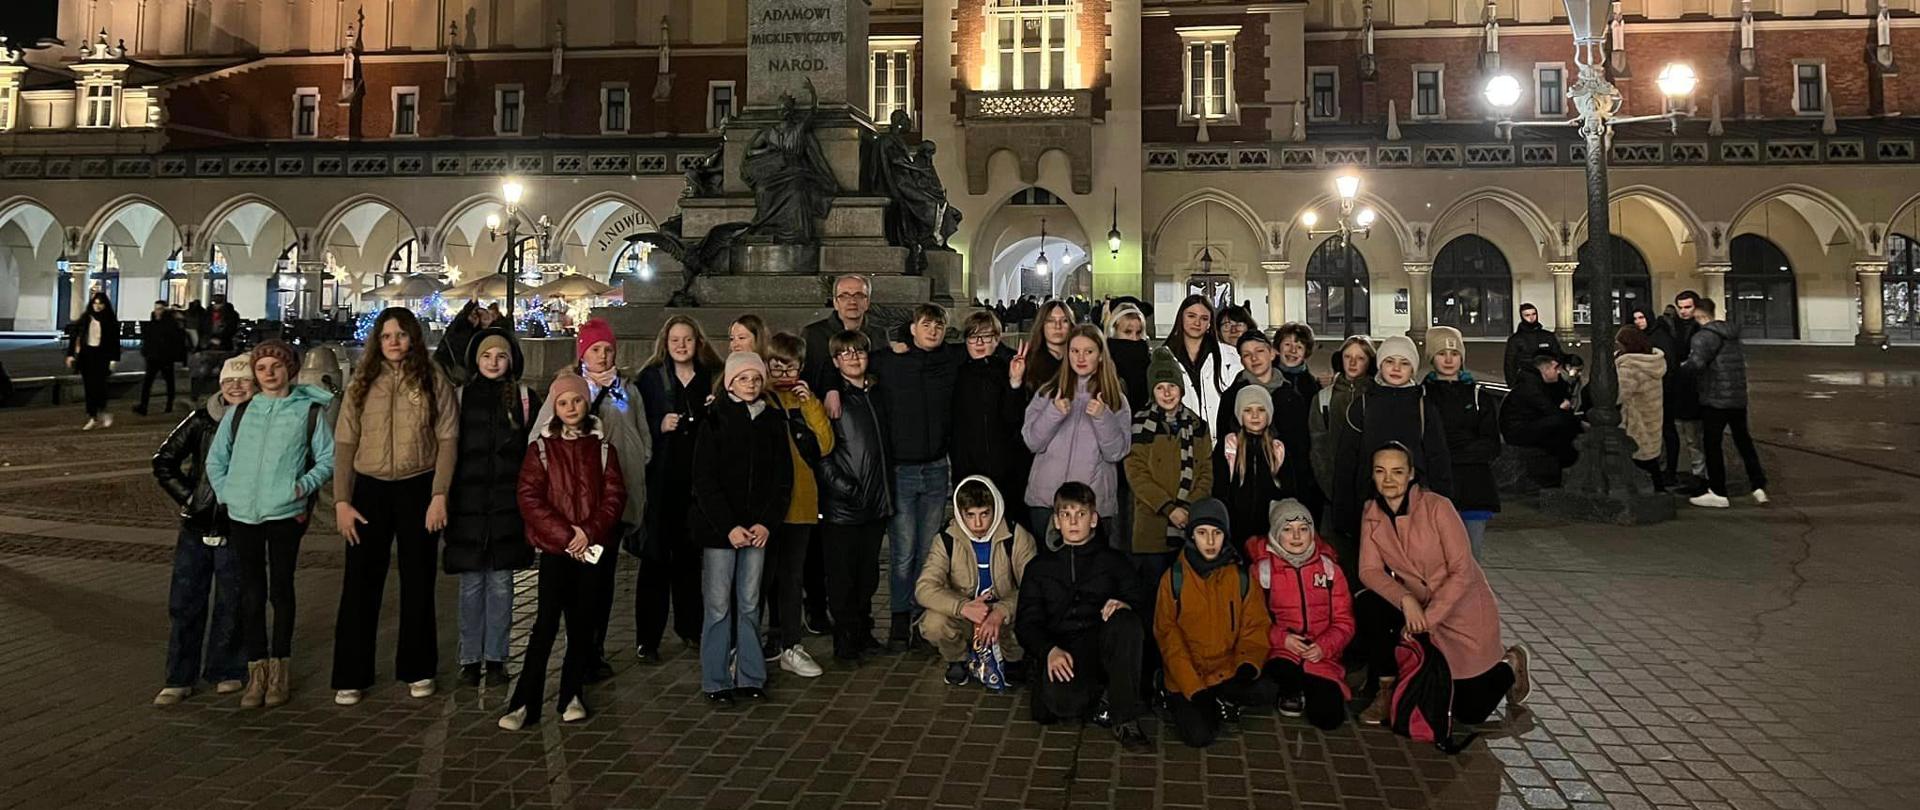 Zdjęcie grupy uczniów na tle Sukiennic w Krakowie zrobione nocą.